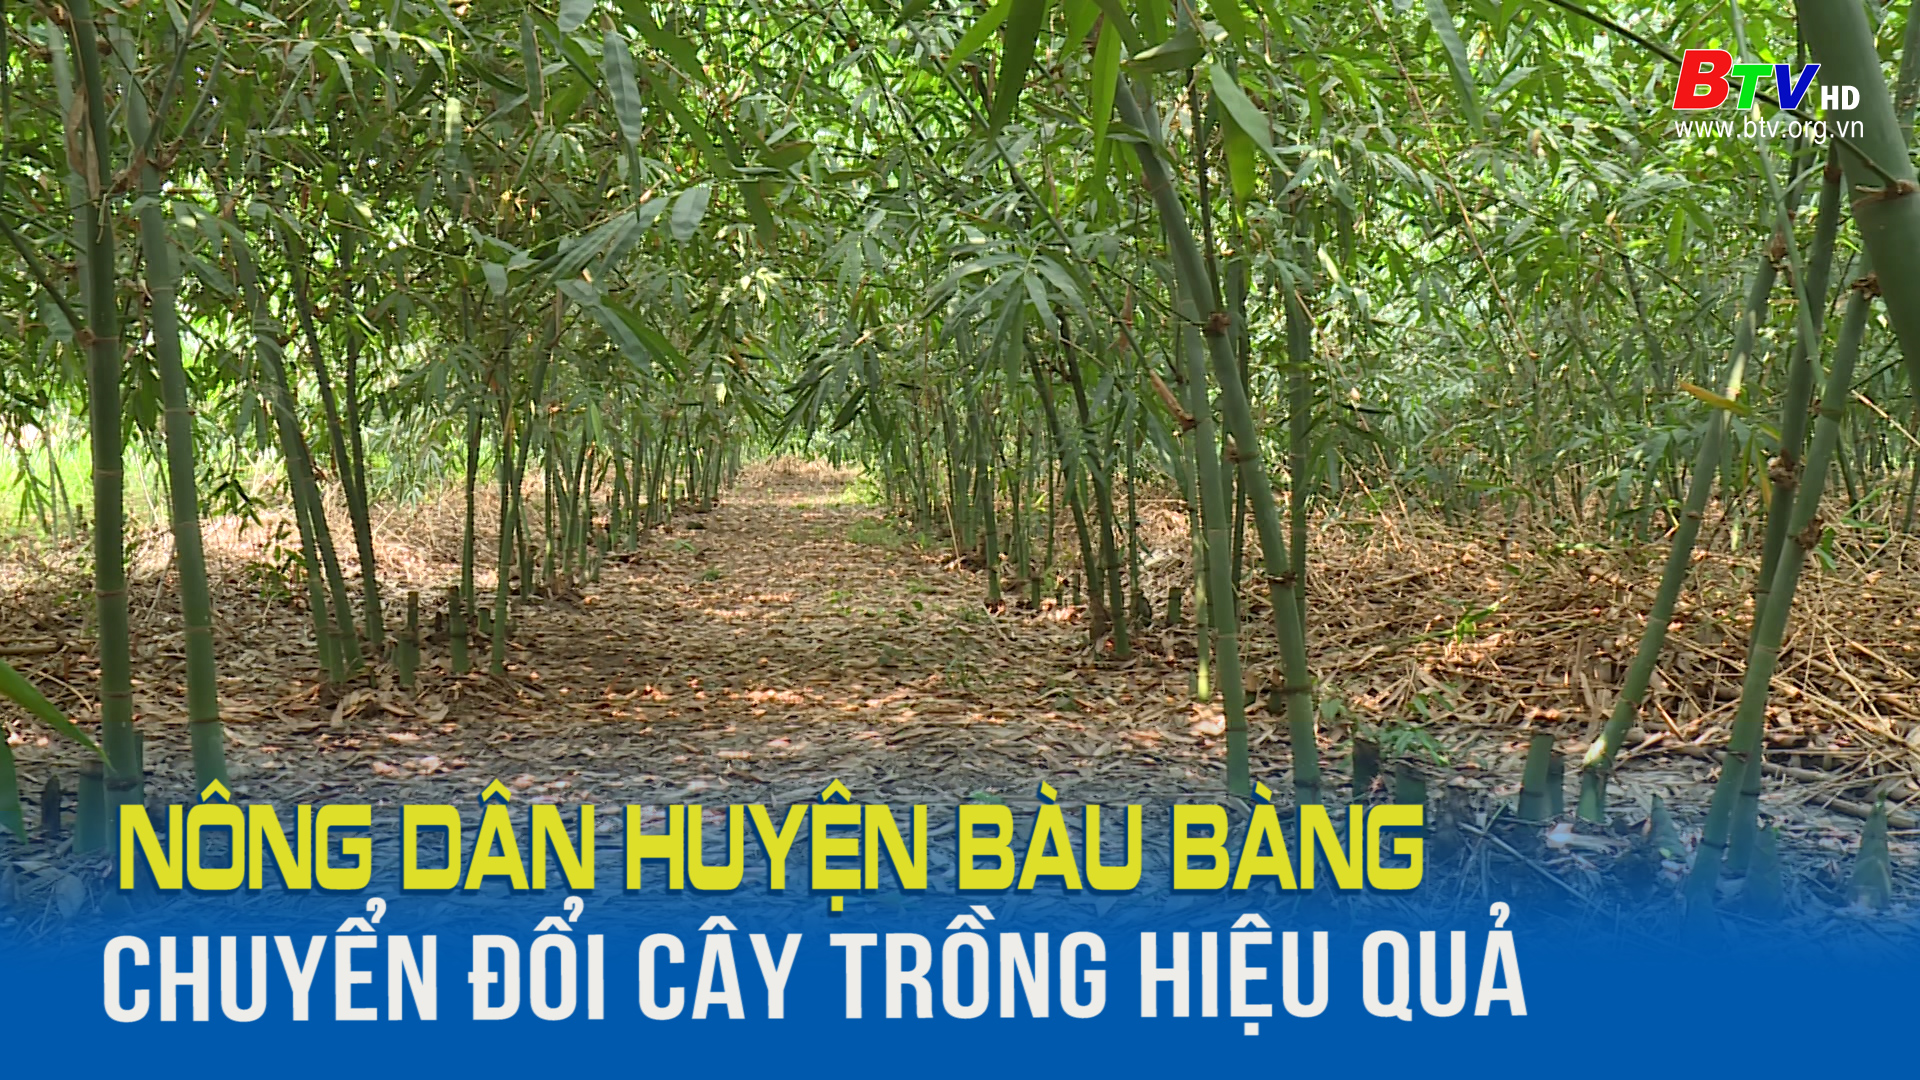 Nông dân huyện Bàu Bàng chuyển đổi cây trồng hiệu quả